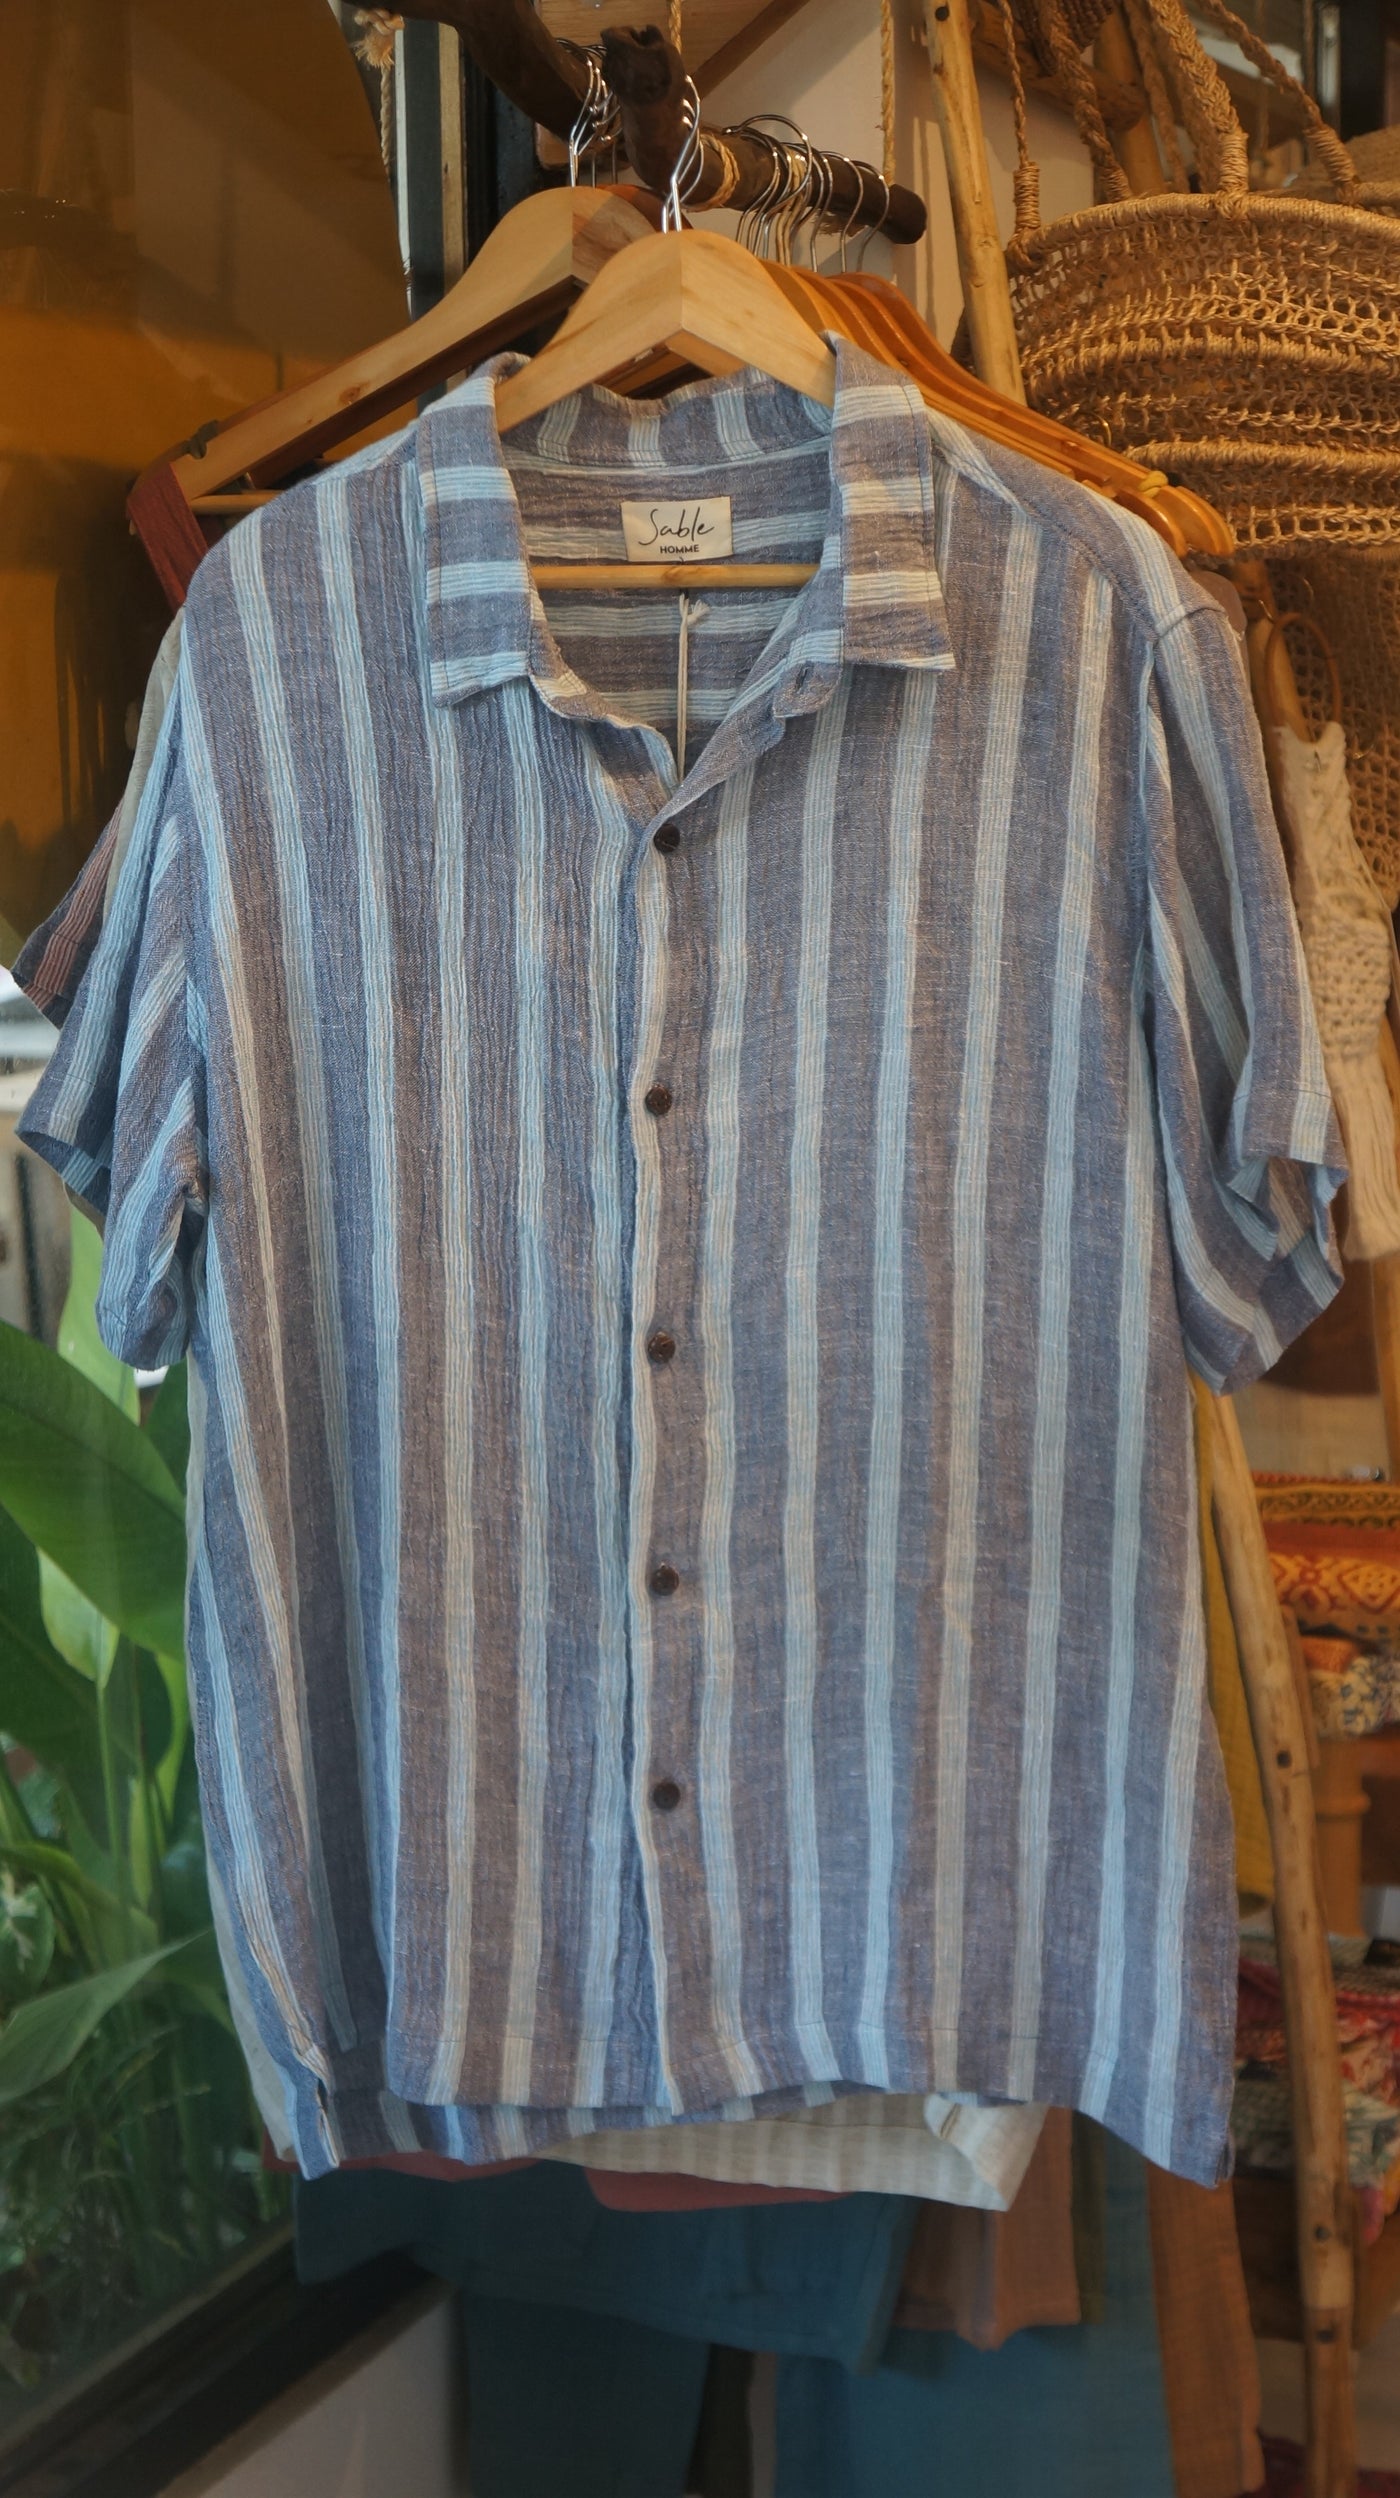 Leo Linen Shirt for Men - Blue & Green Stripes